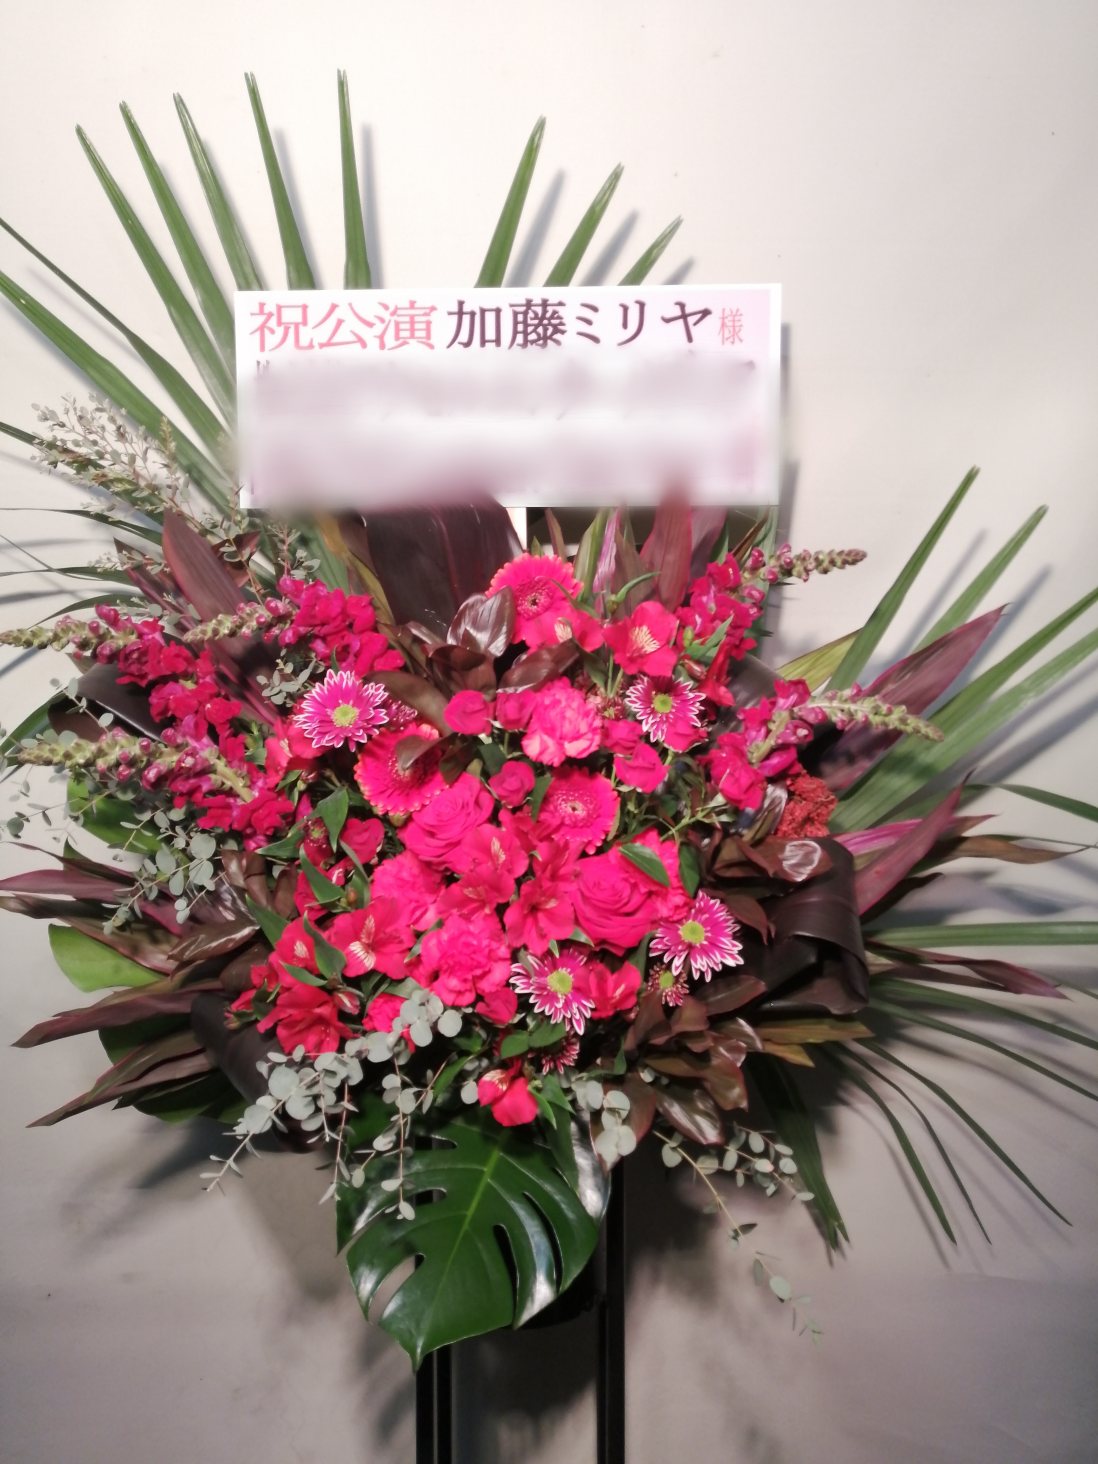 東京ドームシティホールにお届けしたスタンド花